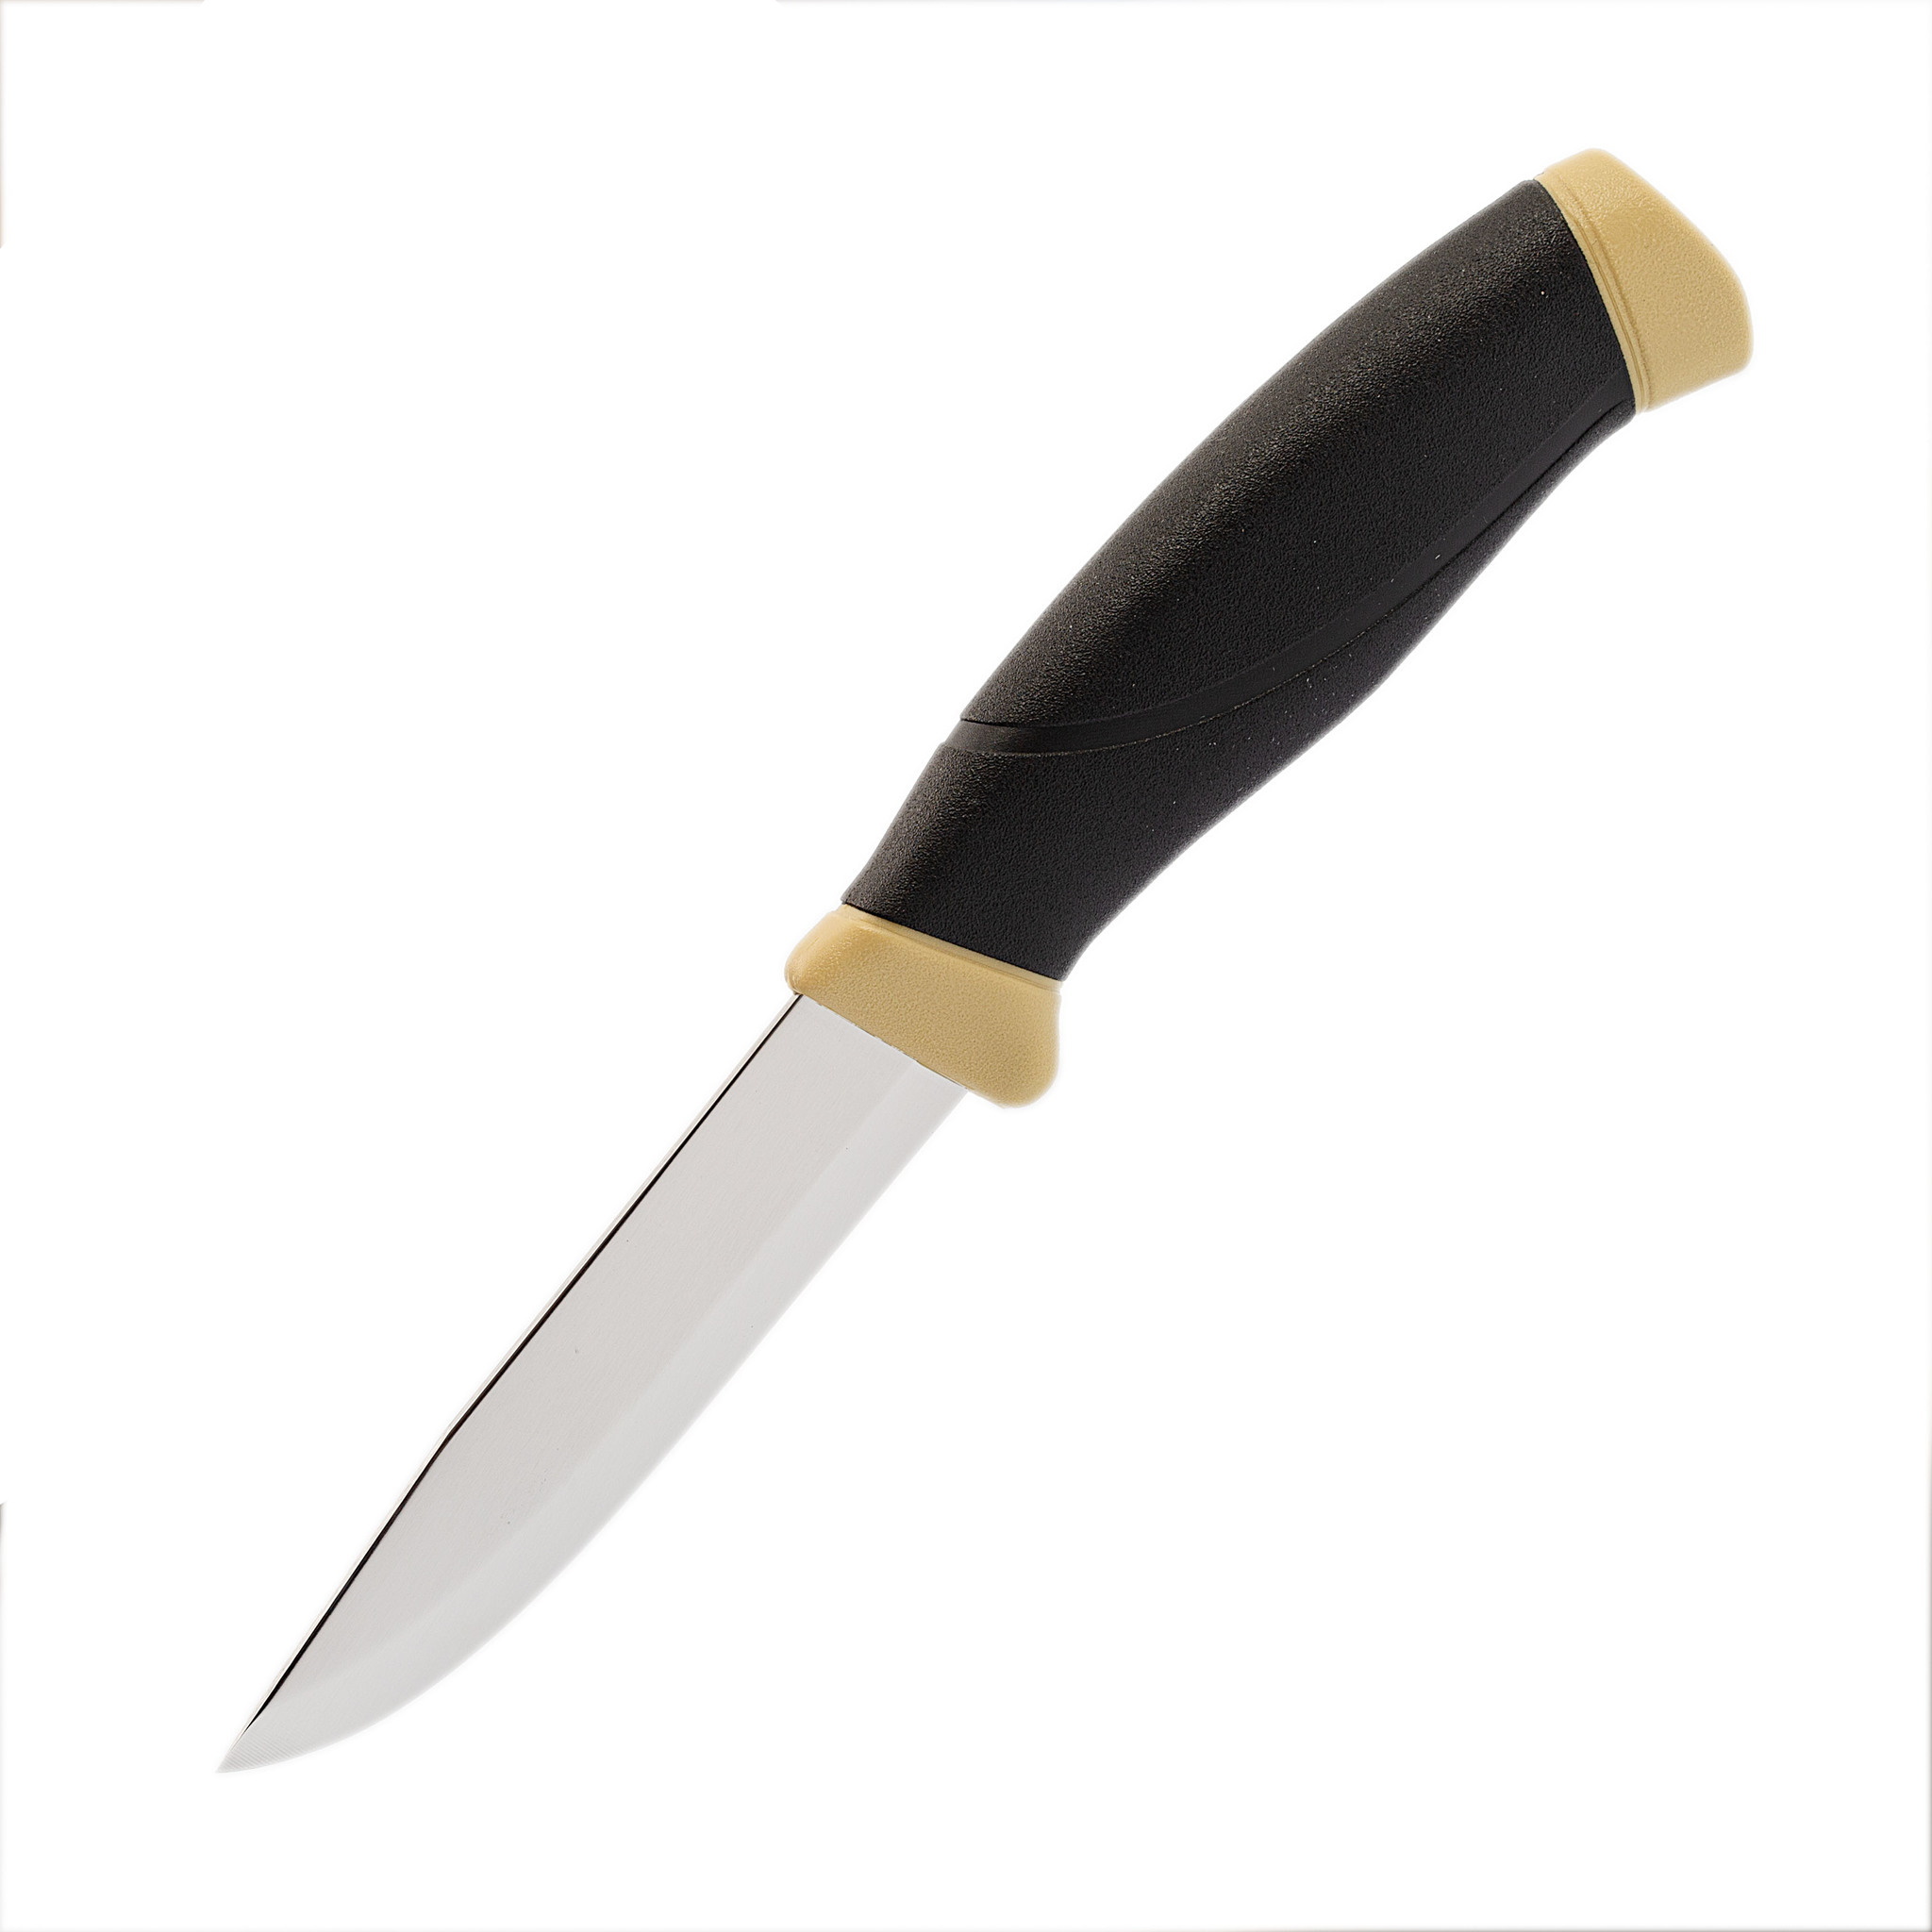 Нож с фиксированным лезвием Morakniv Companion Desert, сталь Sandvik 12С27, рукоять резина/пластик